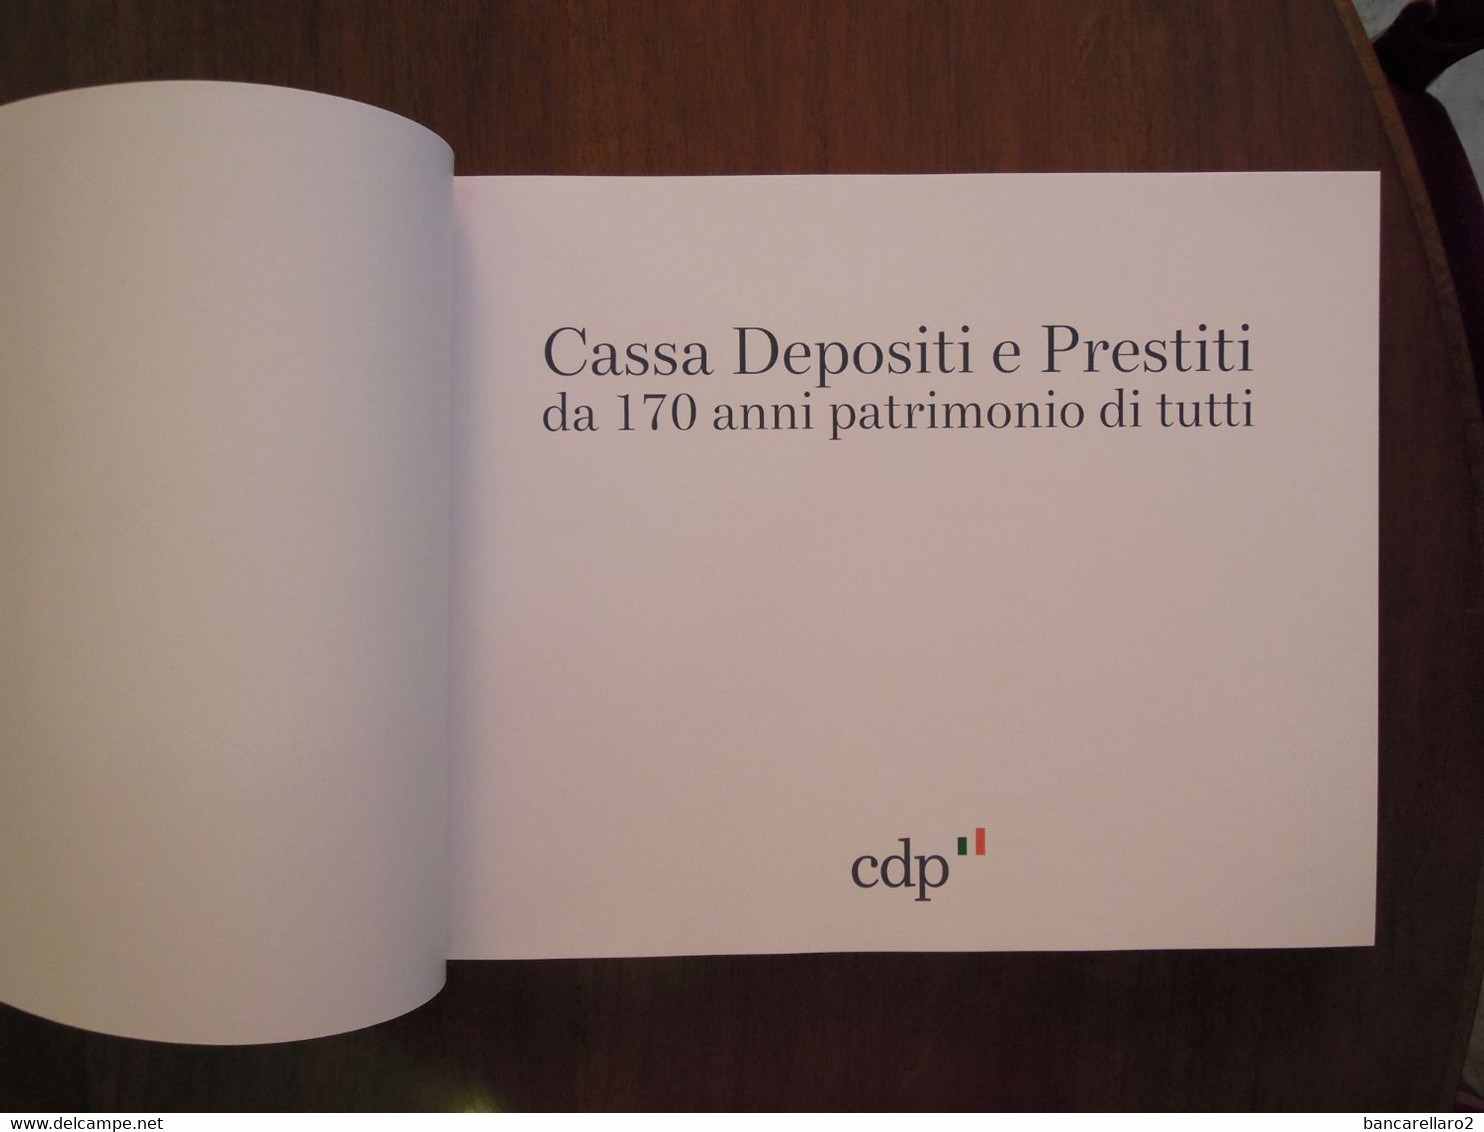 Cassa Depositi e Prestiti da 170 anni patrimonio di tutti (1850 2020)